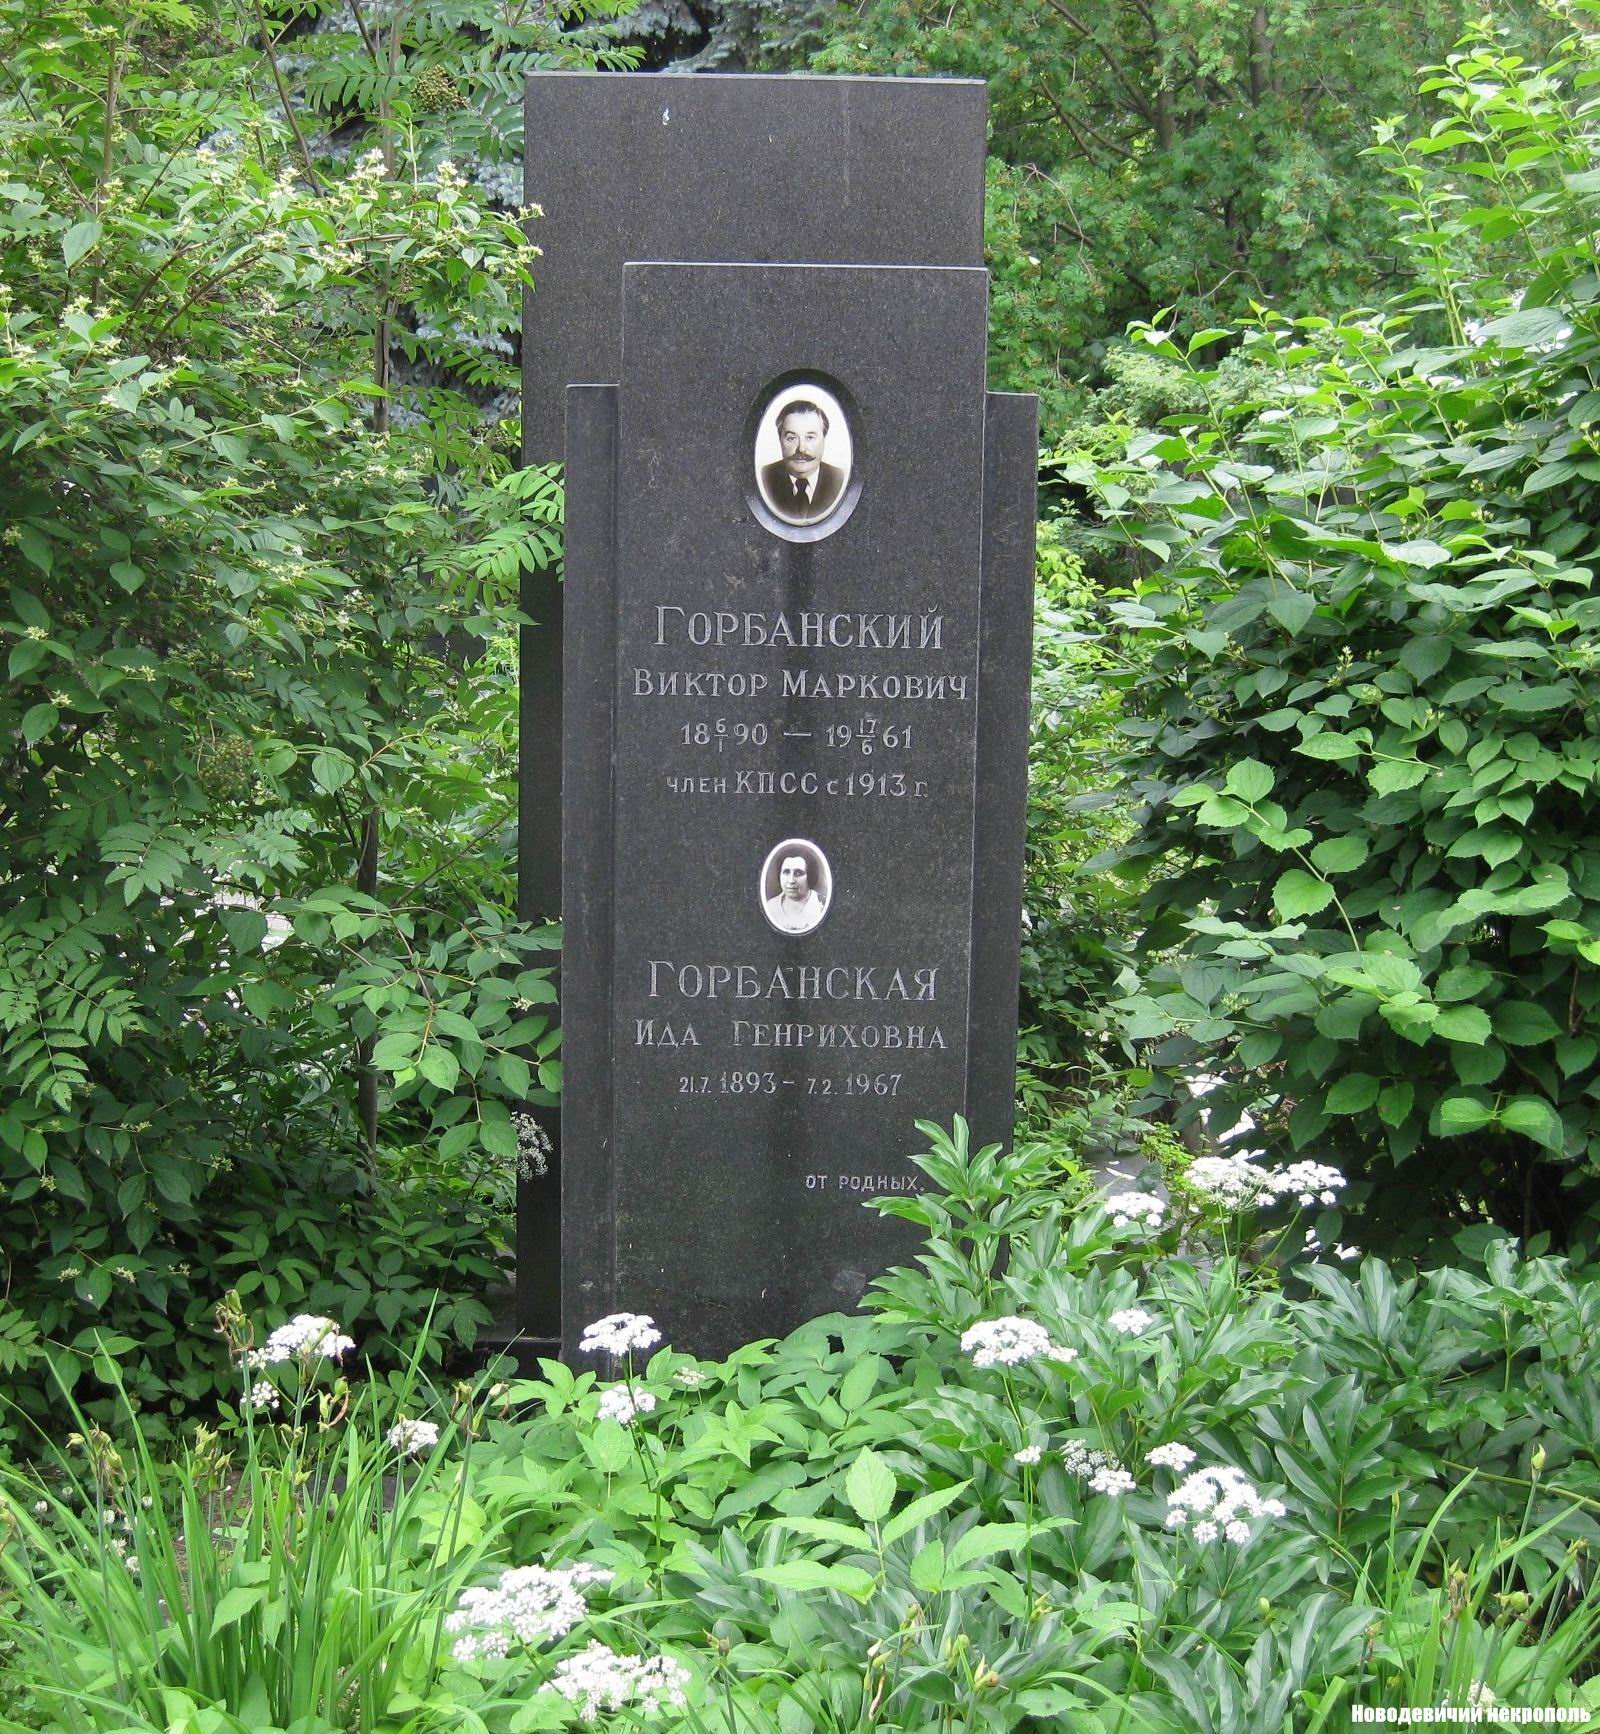 Памятник на могиле Горбанского В.М. (1890-1961), на Новодевичьем кладбище (8-11-8).